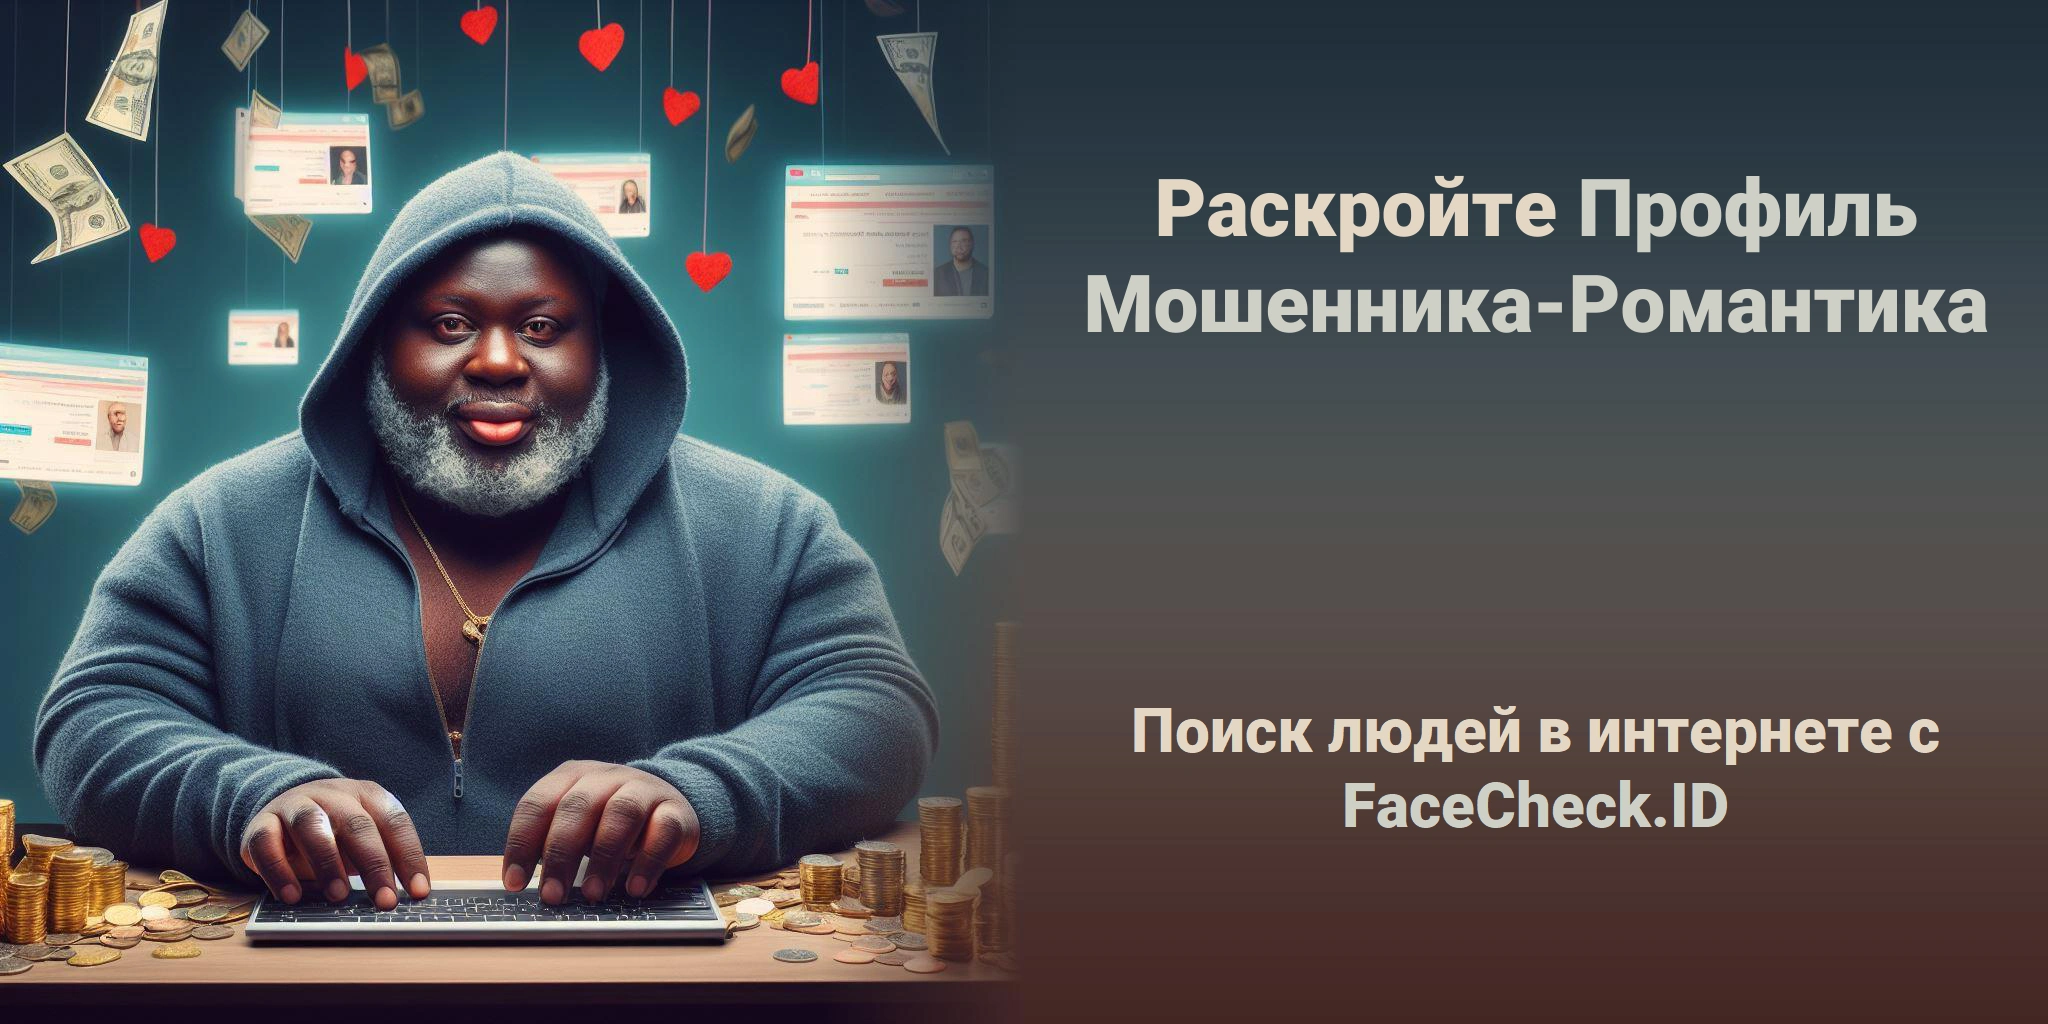 Раскройте Профиль Мошенника-Романтика Поиск людей в интернете с FaceCheck.ID